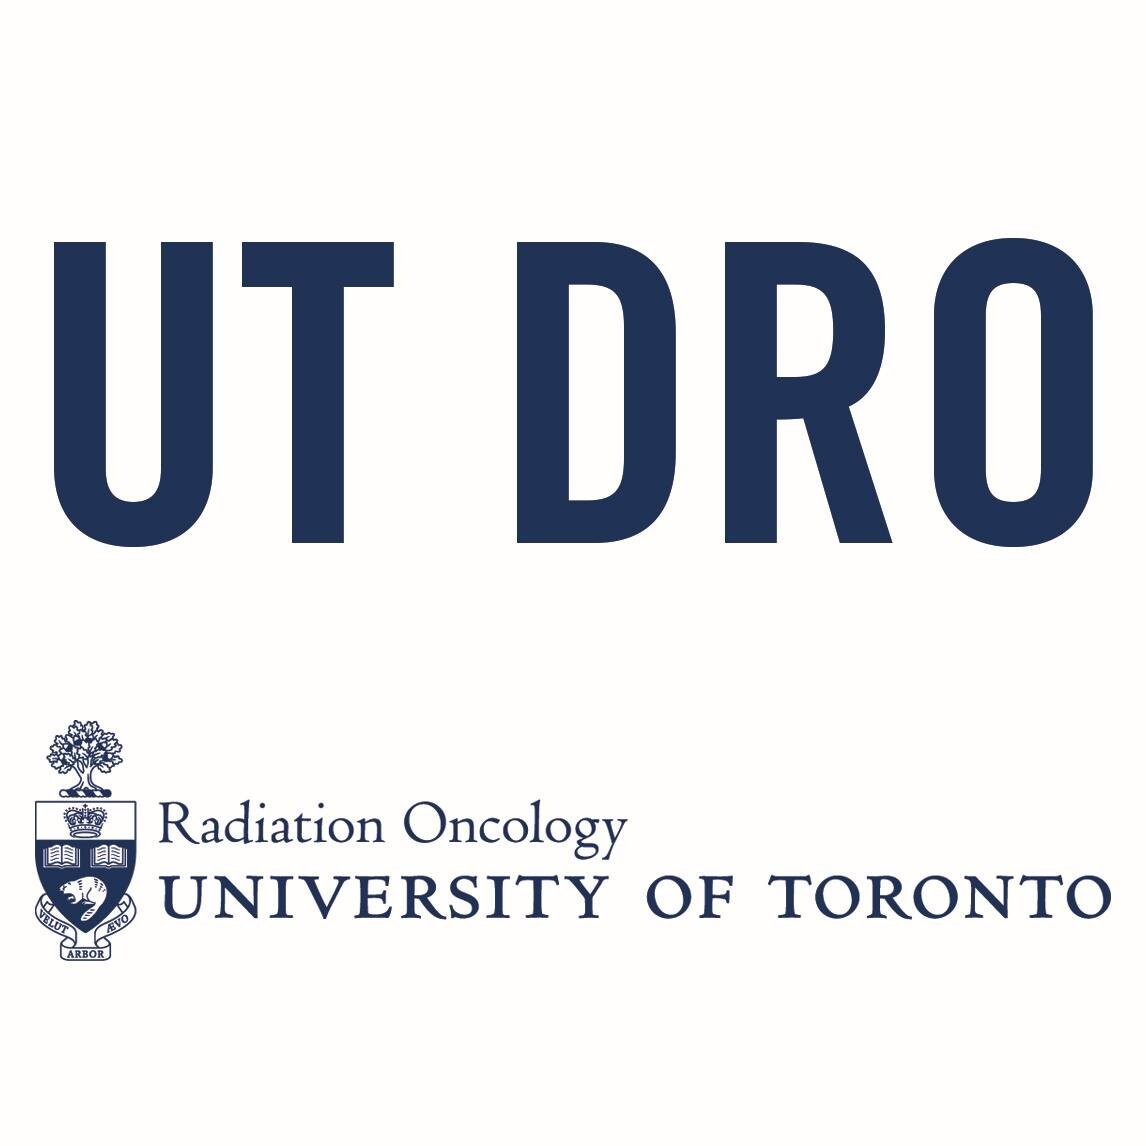 UTDRO Logo